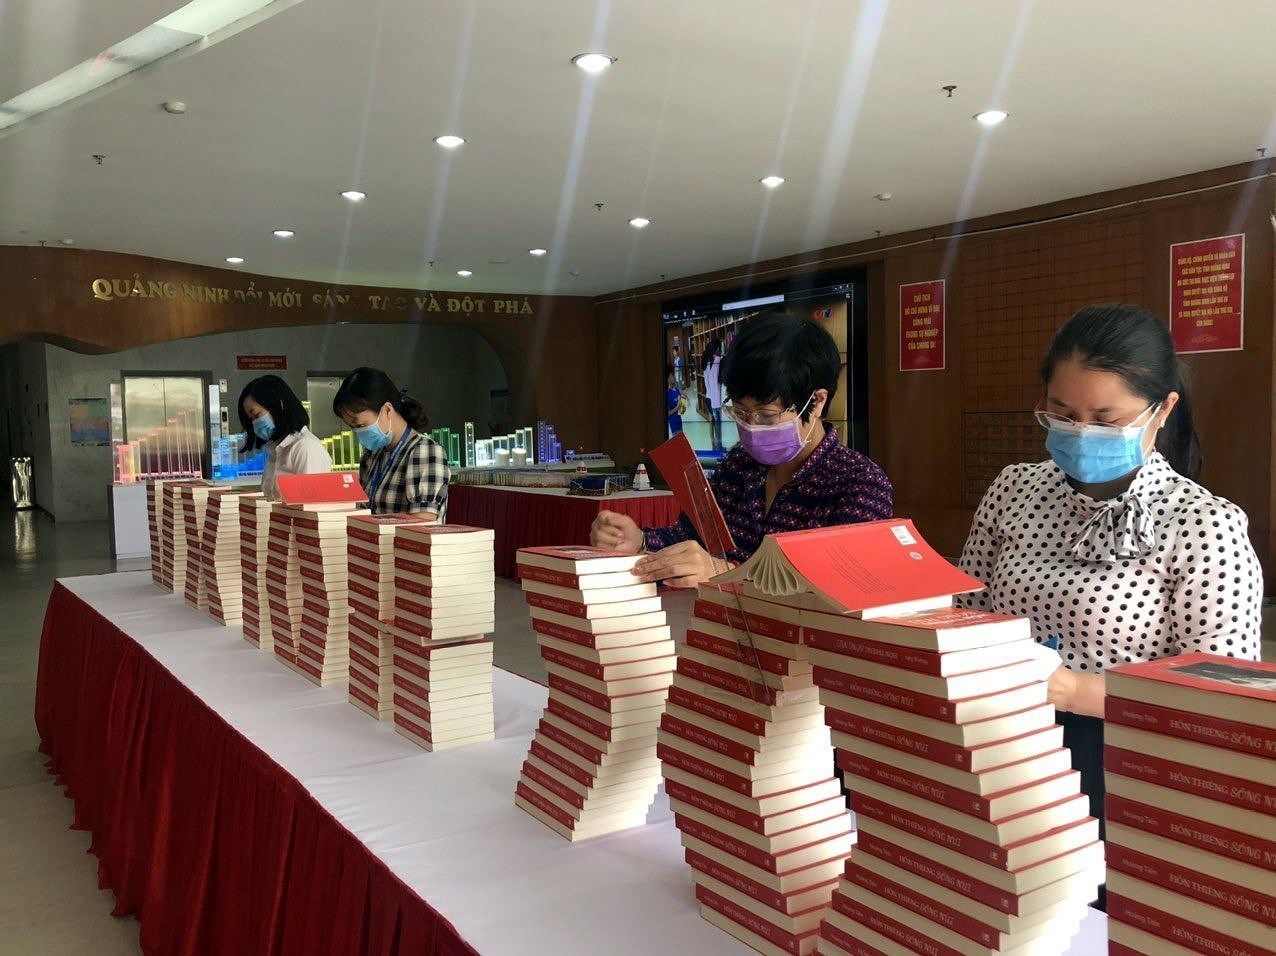 Exposicion de libros sobre elecciones generales de Vietnam hinh anh 2